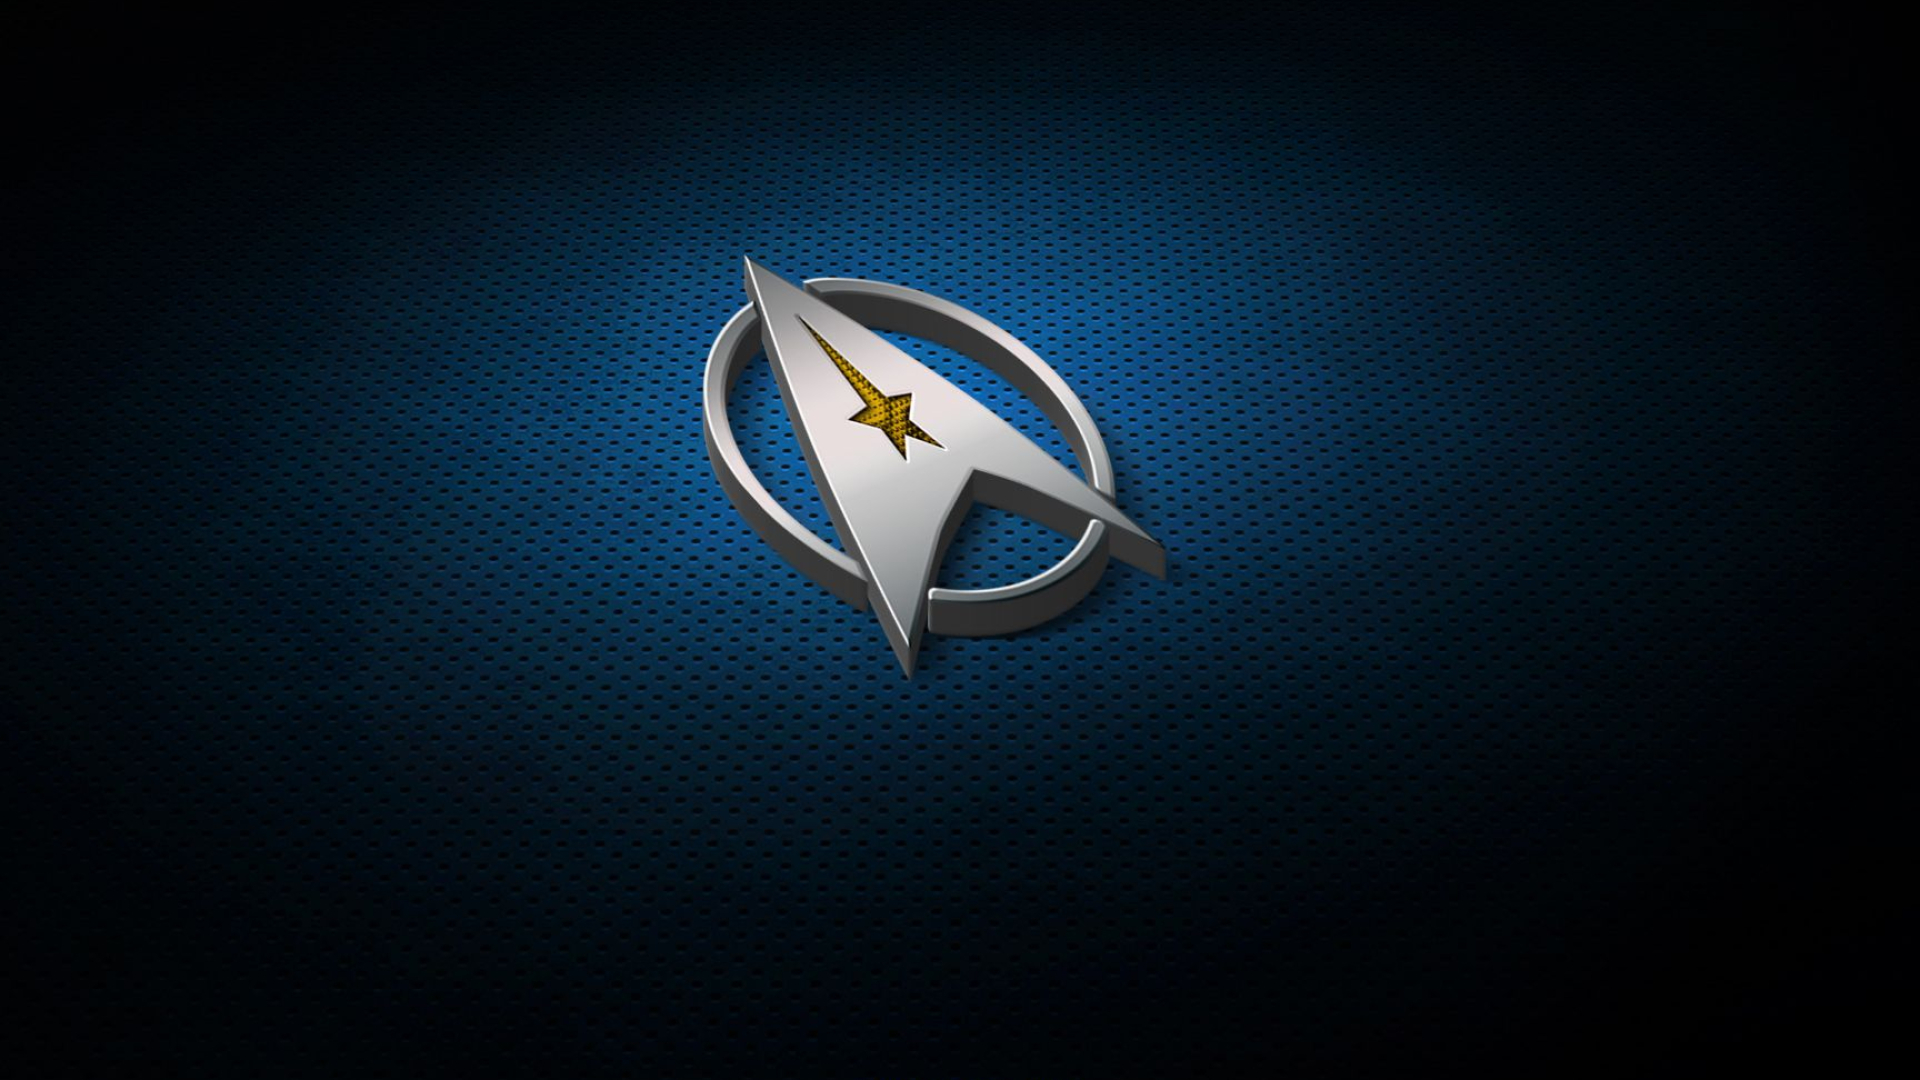 1920x1080 Logo Star Trek Backgrounds for Desktop 2. | Star trek wallpaper, Star trek, Star trek log